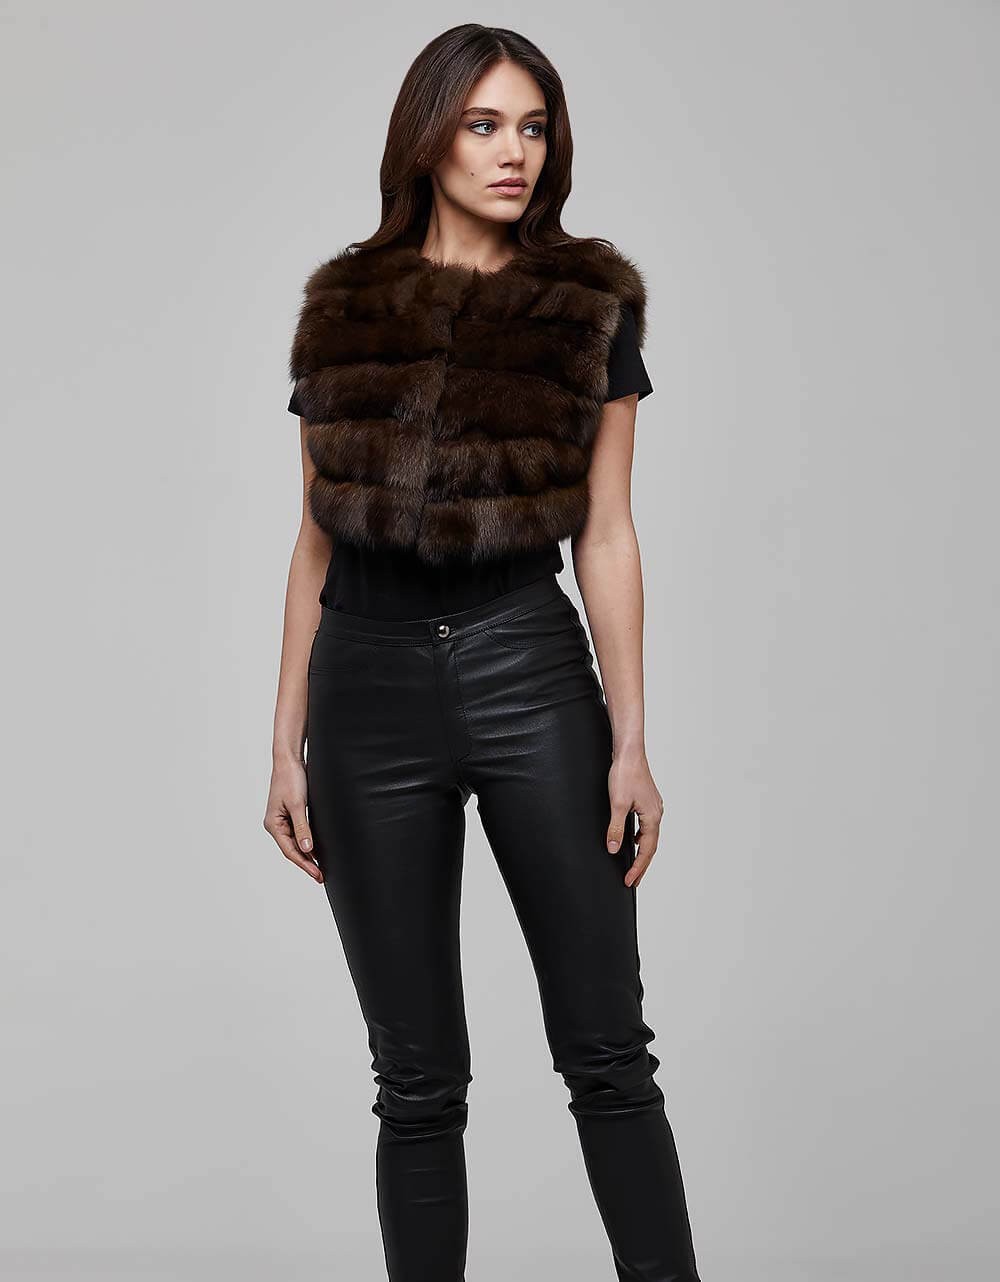 Sable Colour Fox Fur Gilet Vest For Women